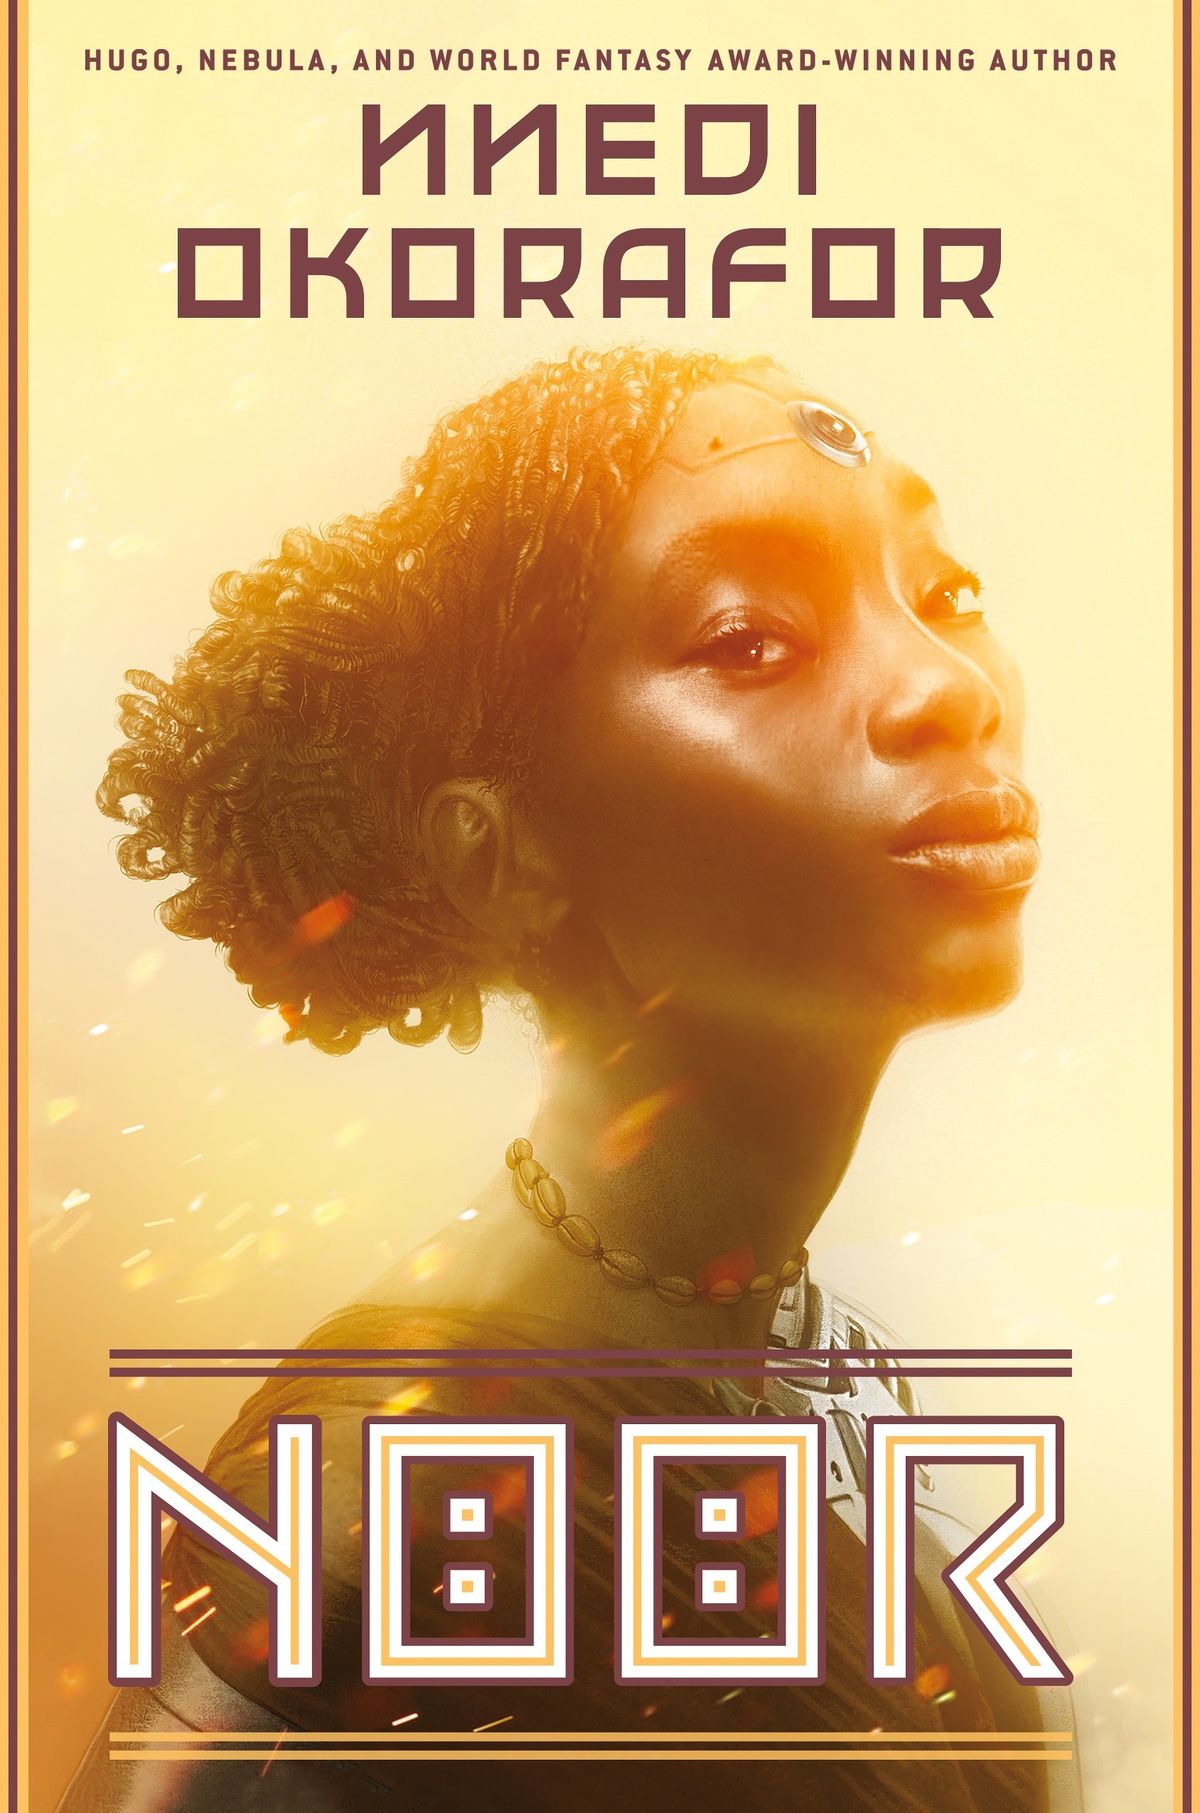 Το «Noor» του Nnedi Okorafor υπόσχεται Cyborgs, αφρικανικό φουτουρισμό και άφθονη περιπέτεια